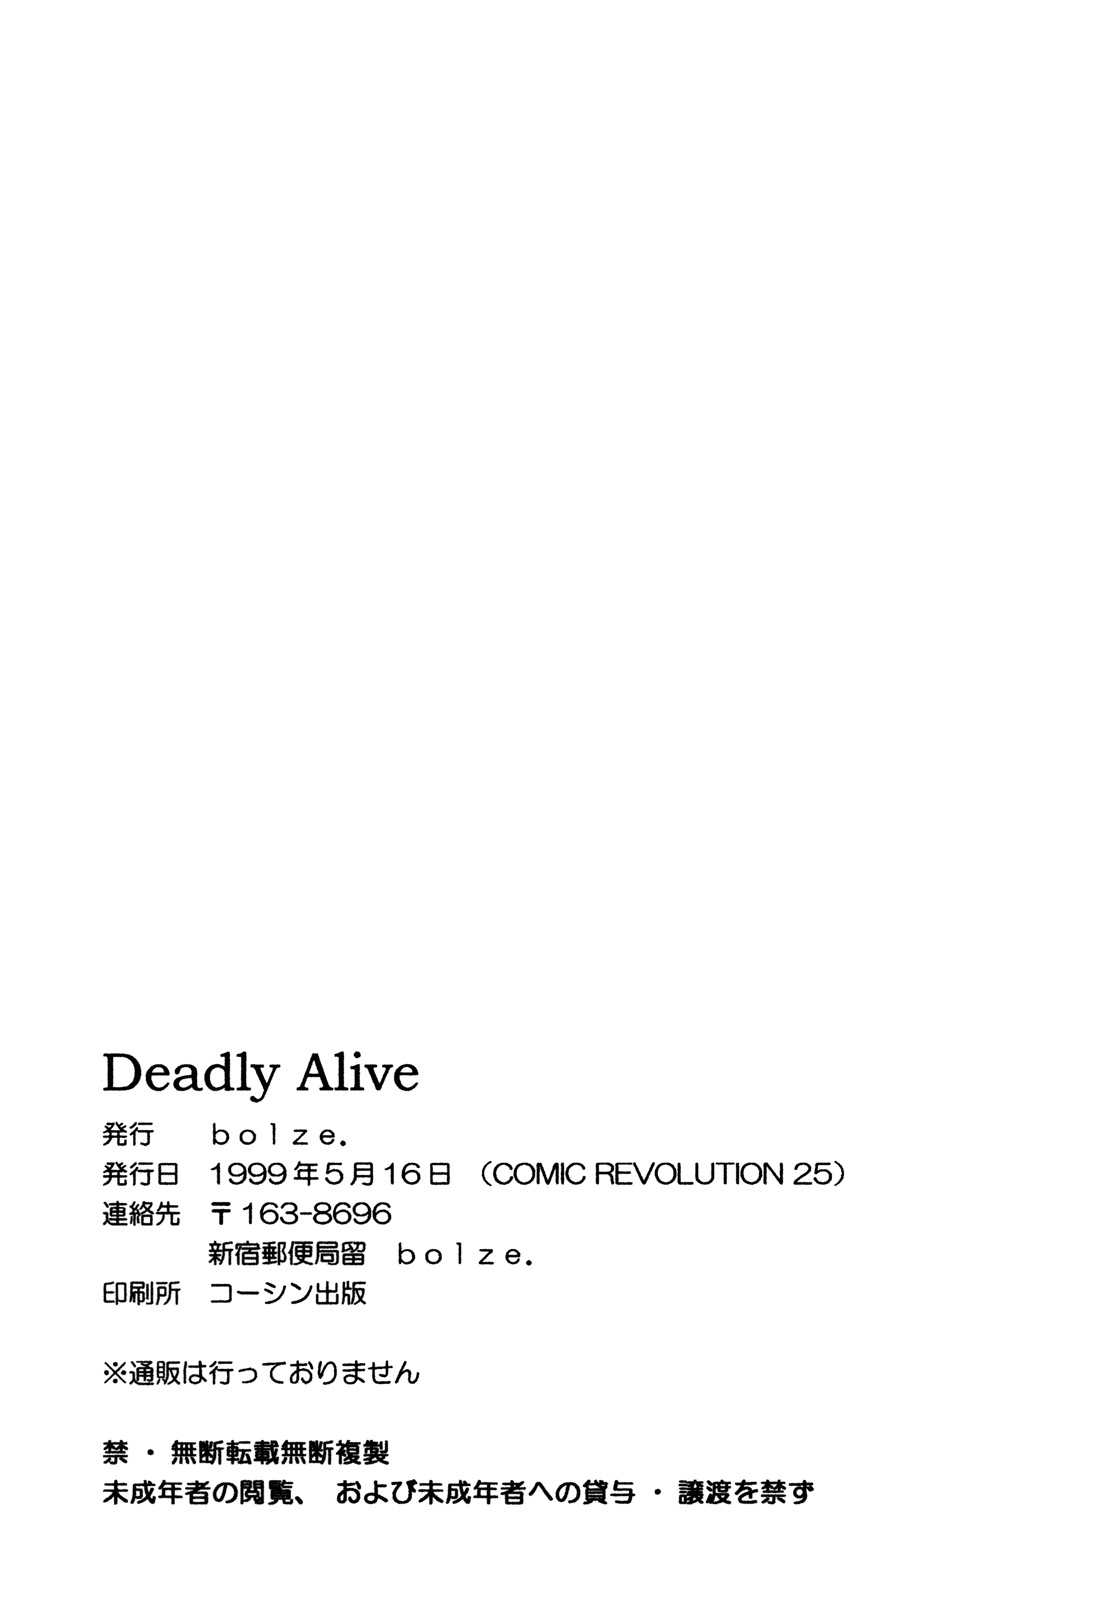 (Cレヴォ25) [bolze. (rit.)] P.T. 'Deadly Alive' (デッド・オア・アライヴ)